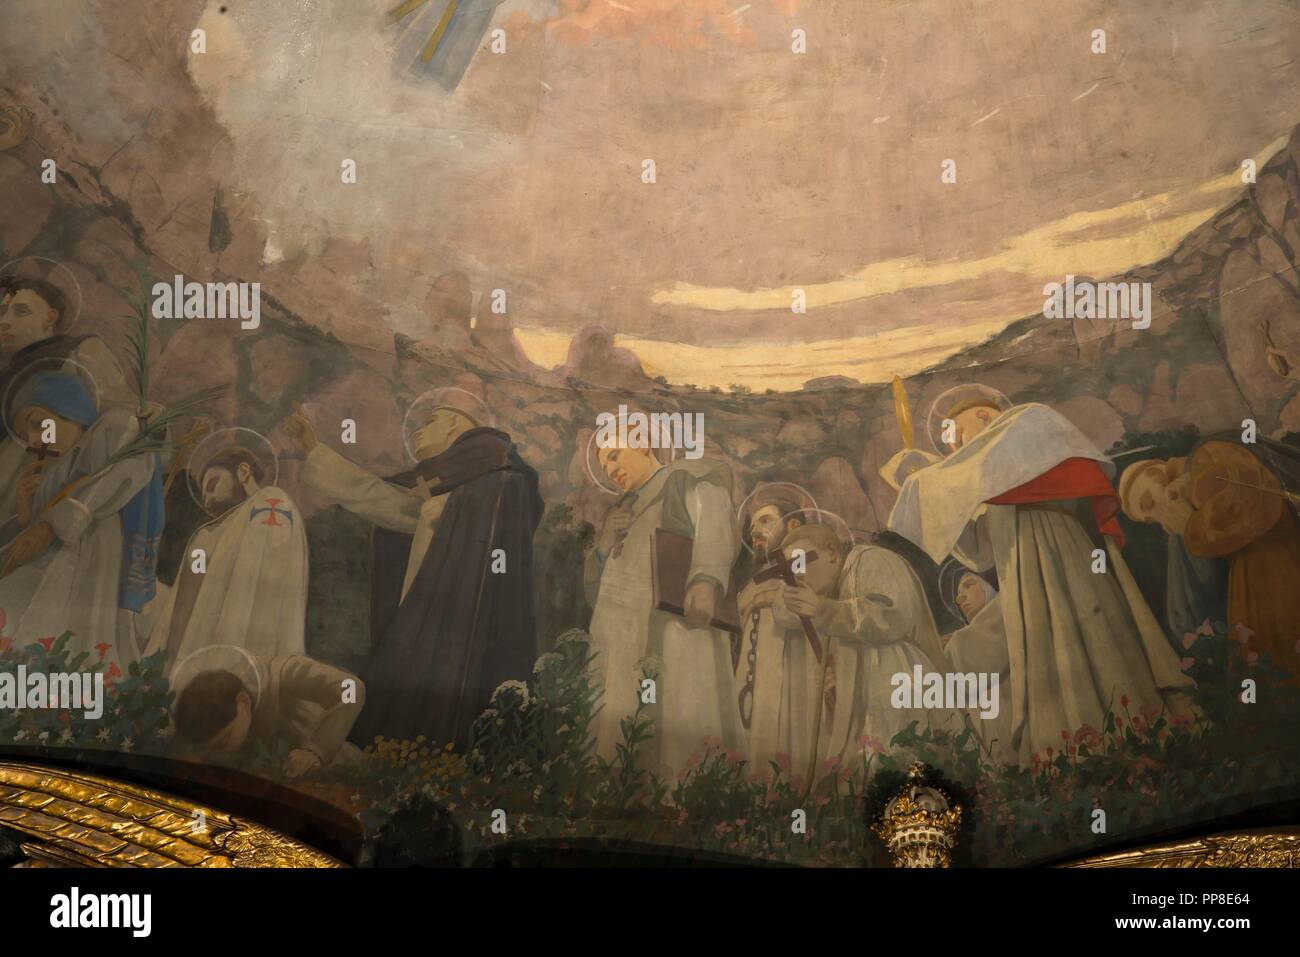 Detalle del Apoteosis de la Virgen, 1896-1898. Pintura mural de la cúpula del cambril de la Virgen. Monasterio de Montserrat. Cataluña. Author: LLIMONA, JOAN. Stock Photo